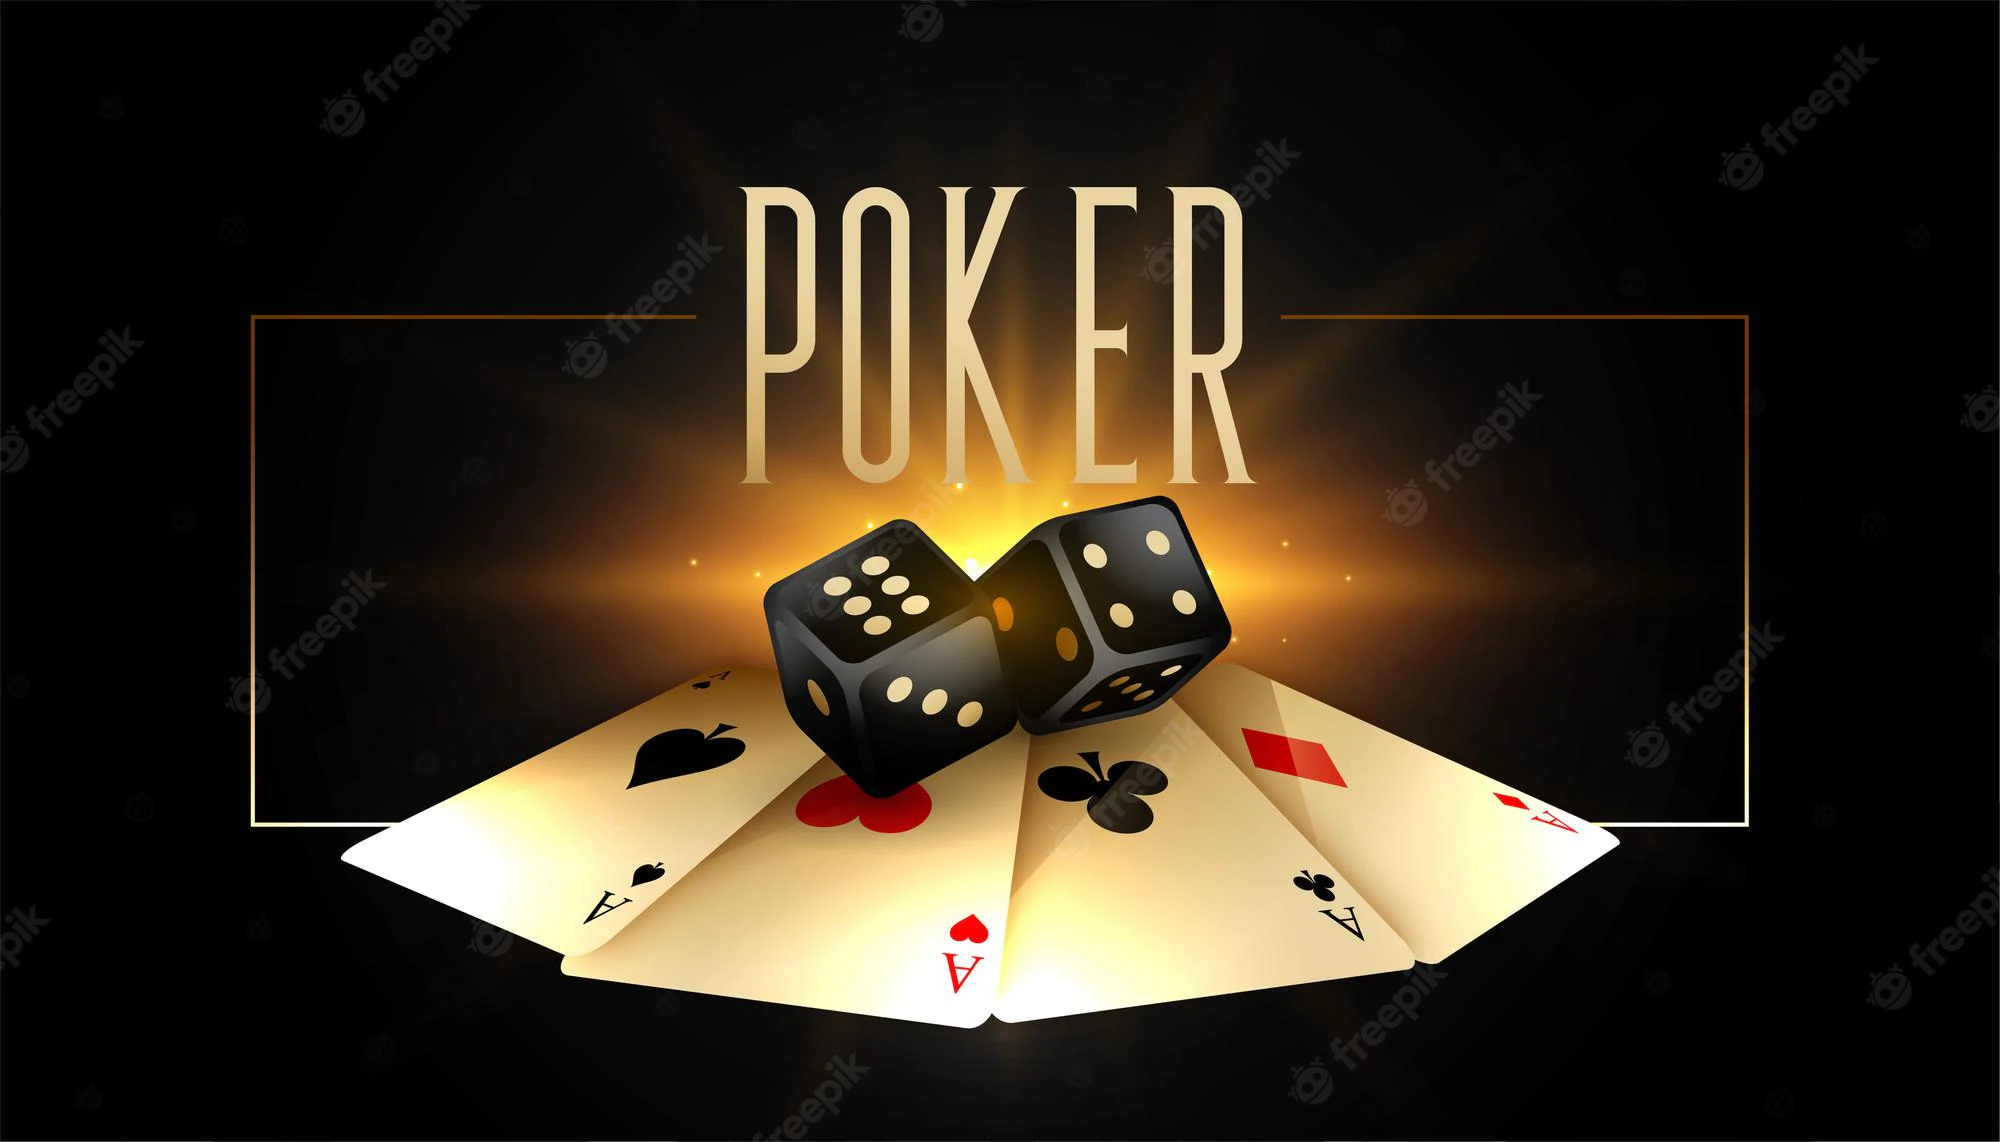 Kinh nghiệm chơi Poker từ các tay chơi chuyên nghiệp